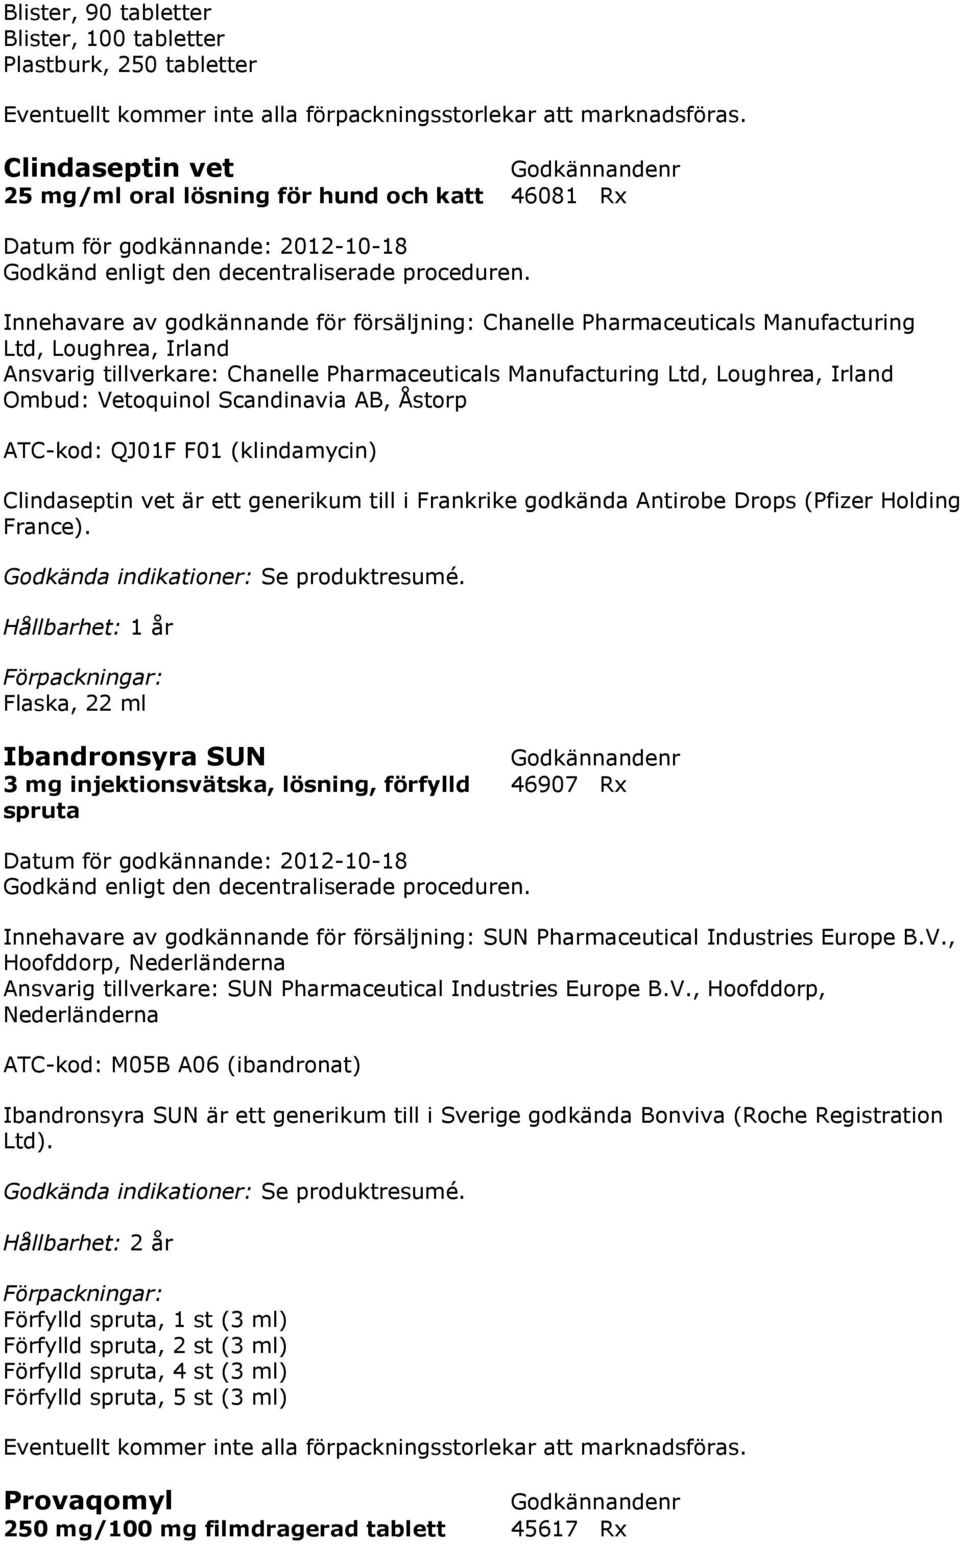 (klindamycin) Clindaseptin vet är ett generikum till i Frankrike godkända Antirobe Drops (Pfizer Holding France).